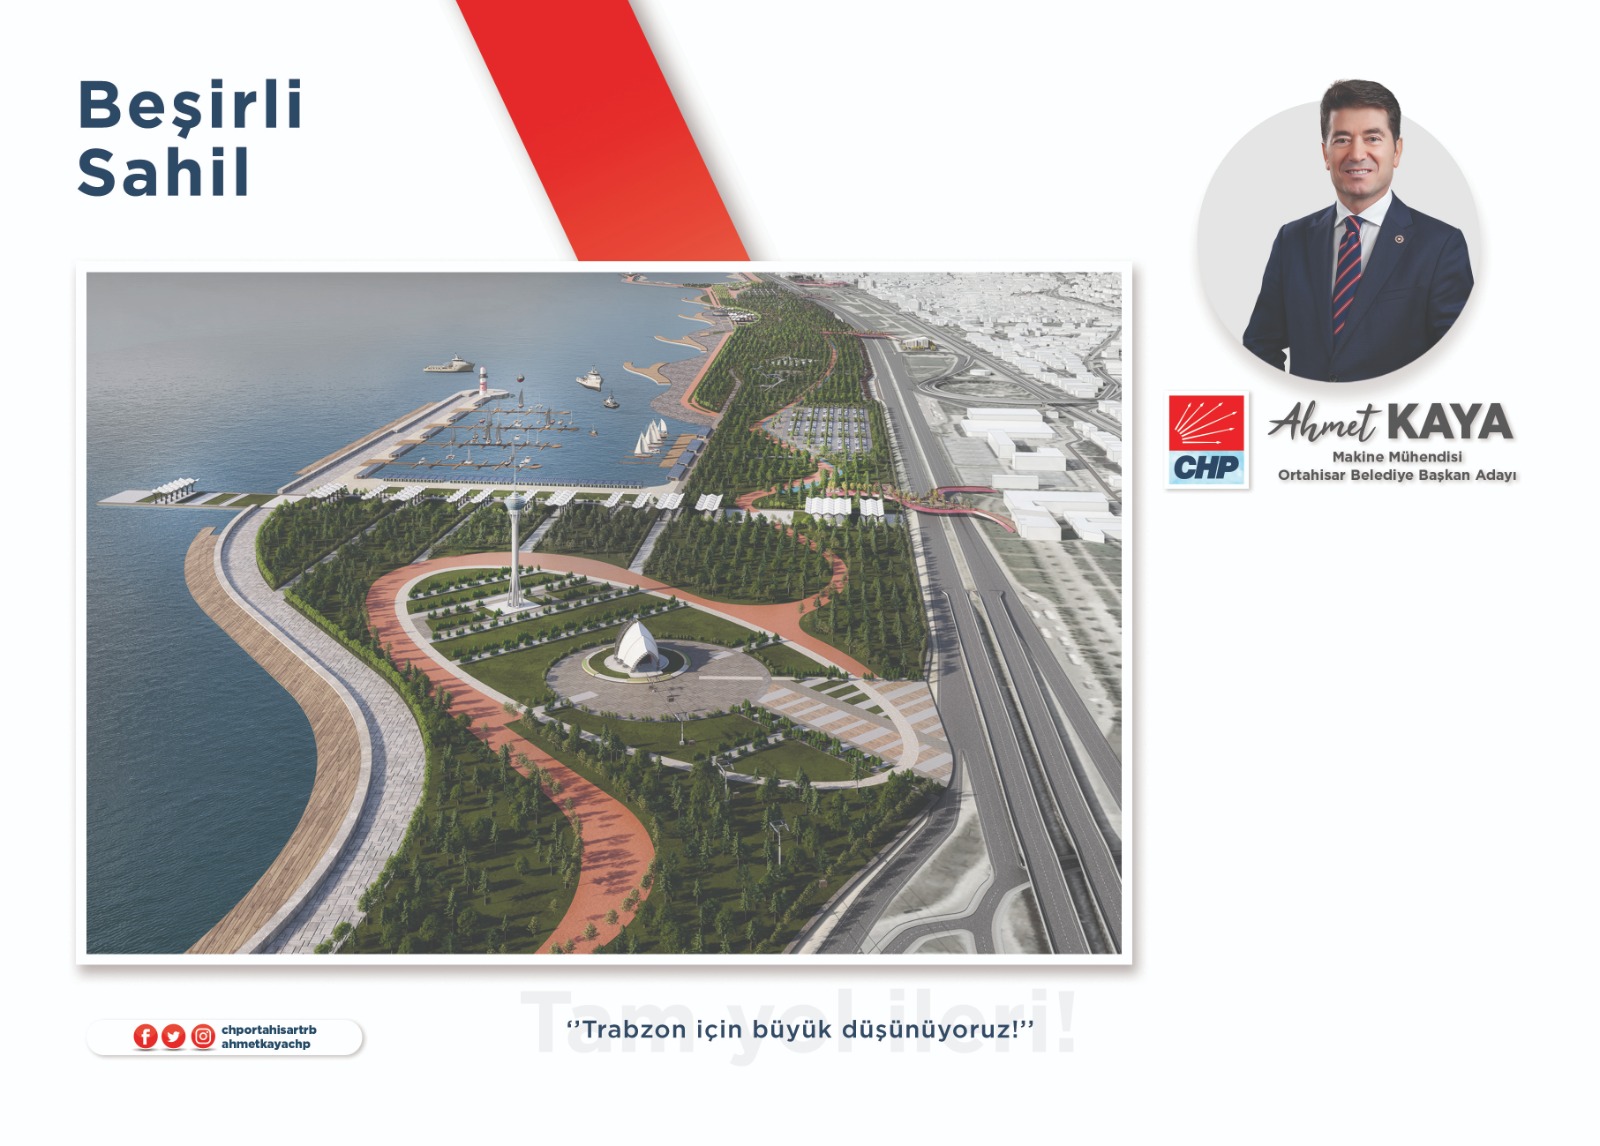 Trabzon Ortahisar Belediye Başkan adayı Ahmet Kaya'nın 41 projesi